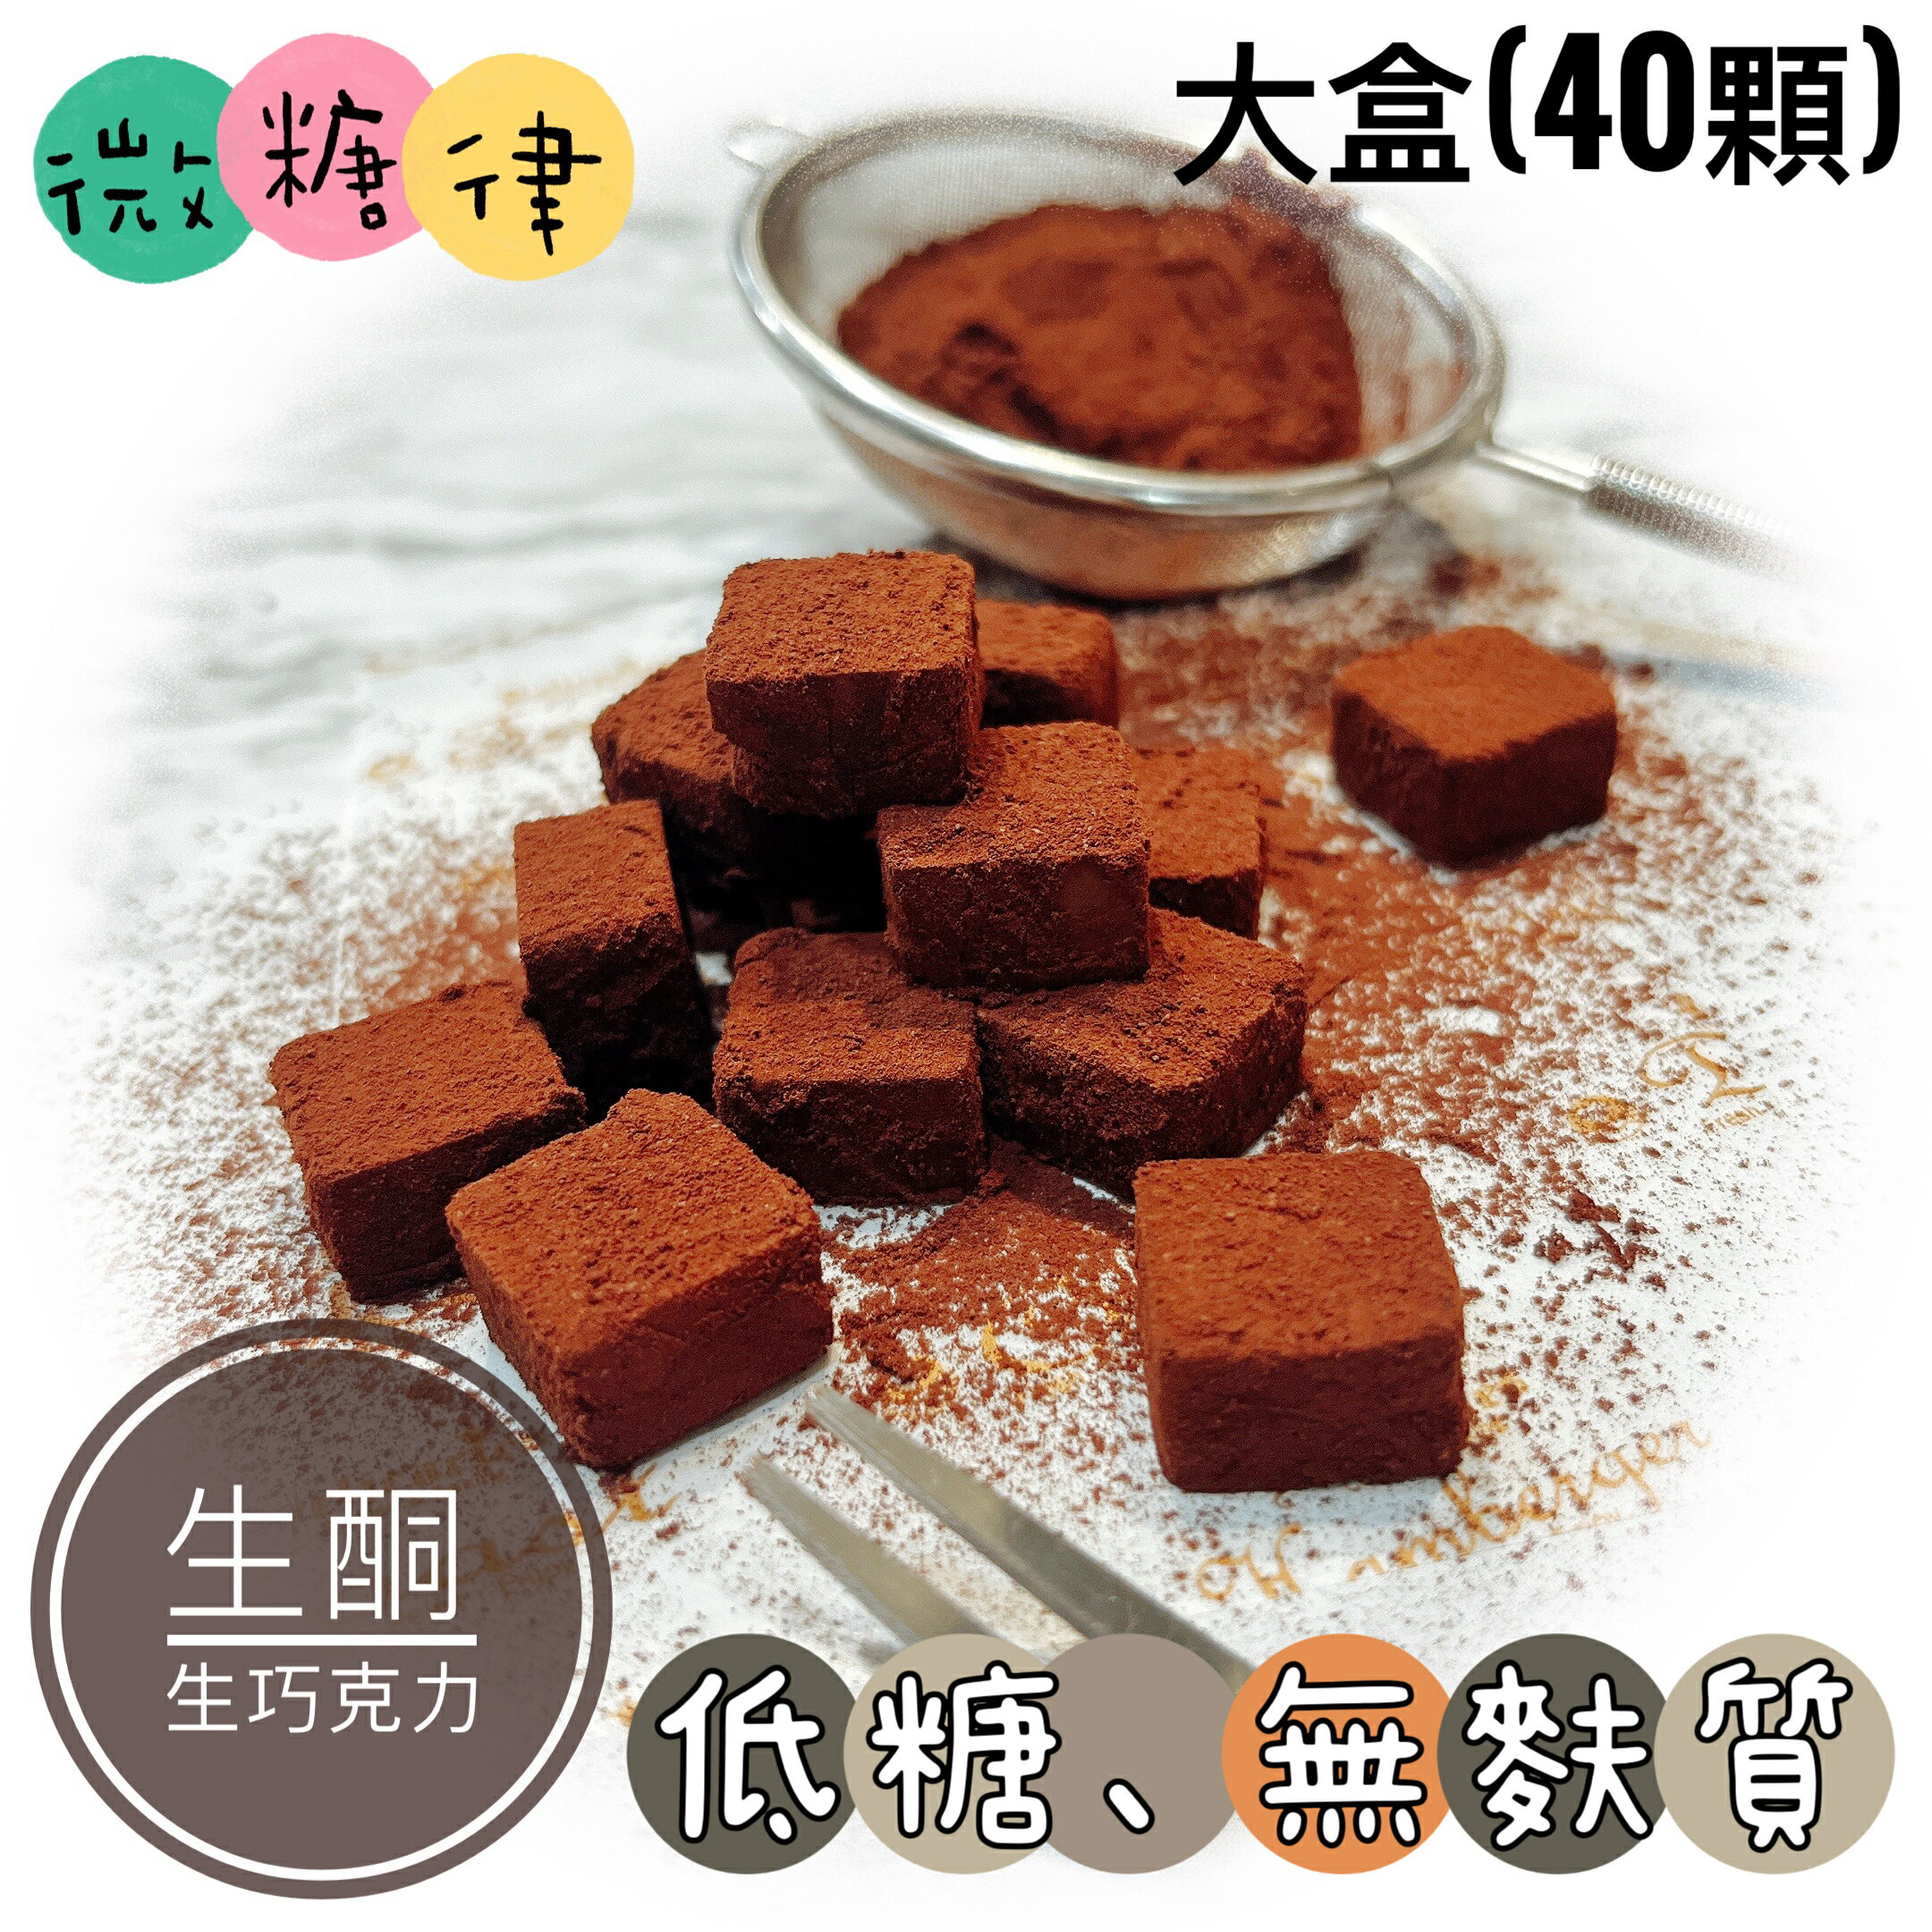 [微糖律]生酮生巧克力-L size(40顆)#低糖甜點#生酮甜點#無麩質#無麵粉